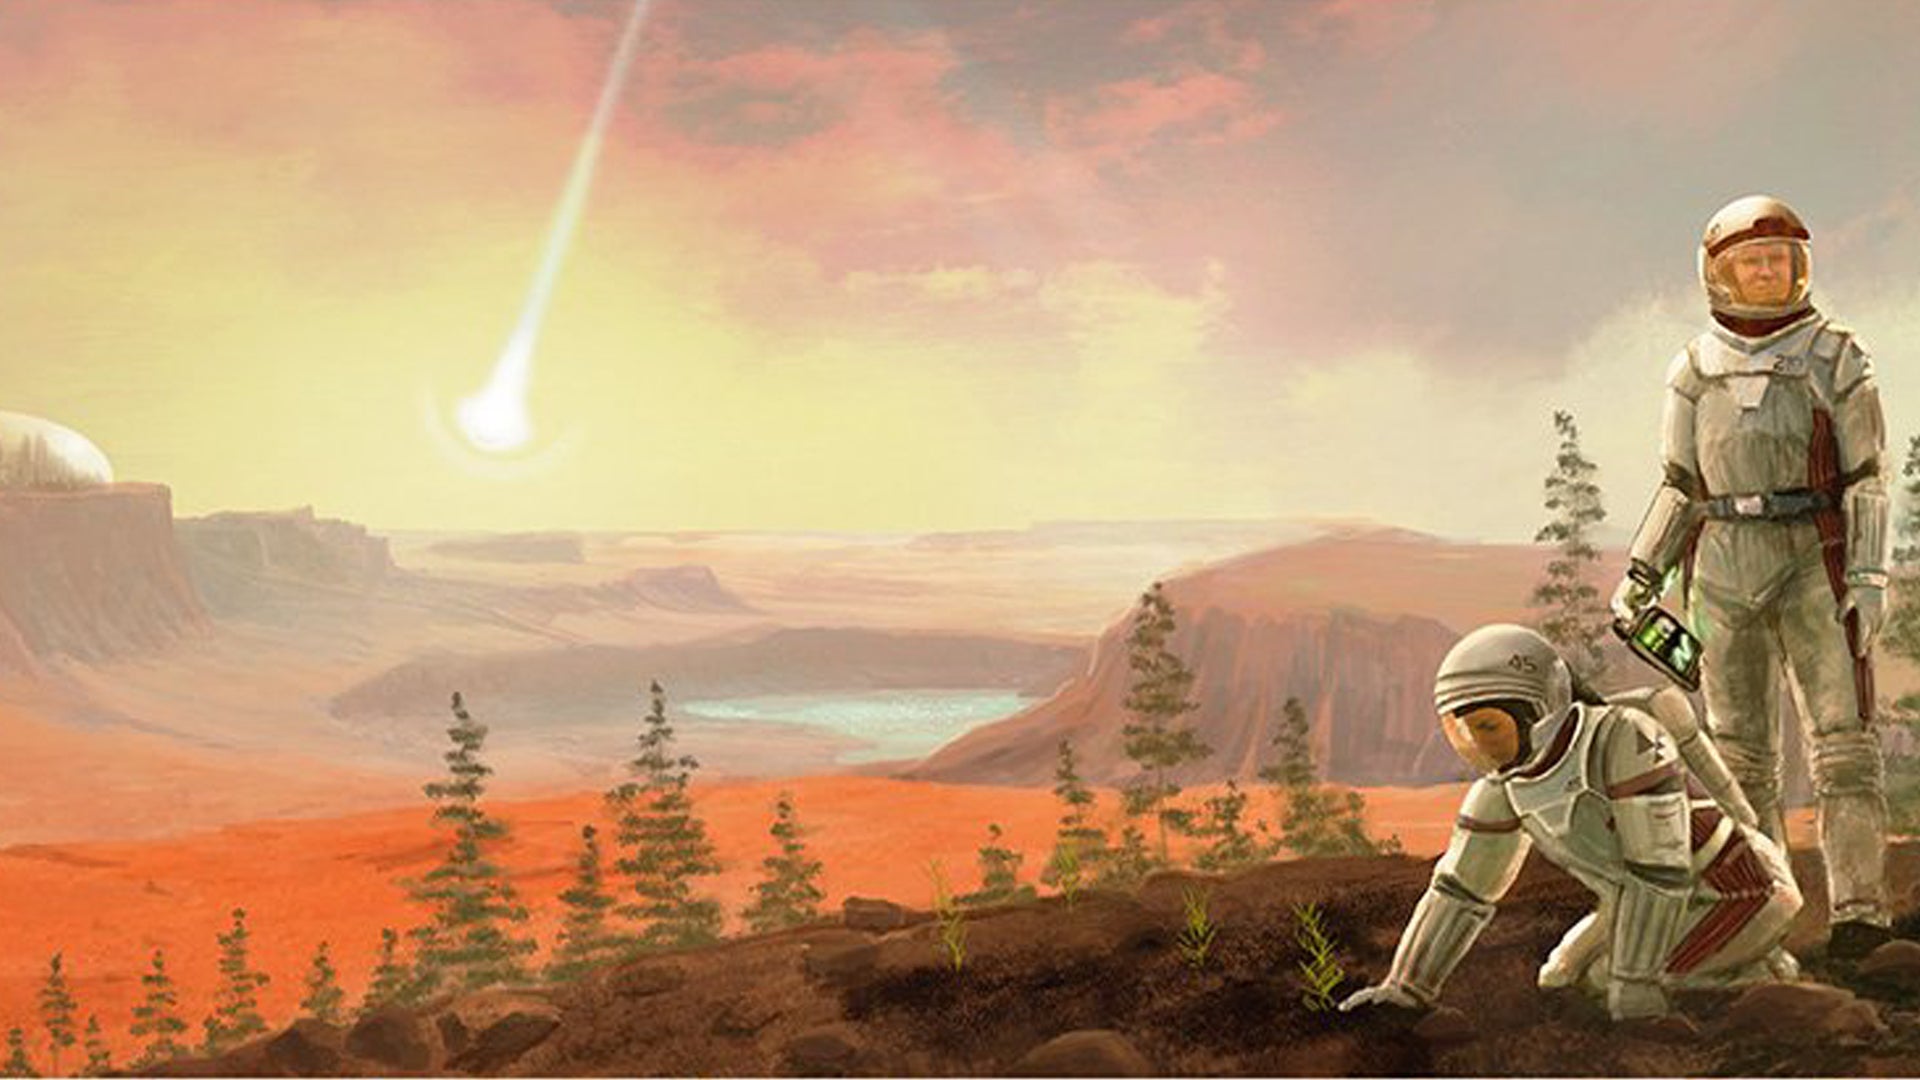 Terraforming Mars board game artwork